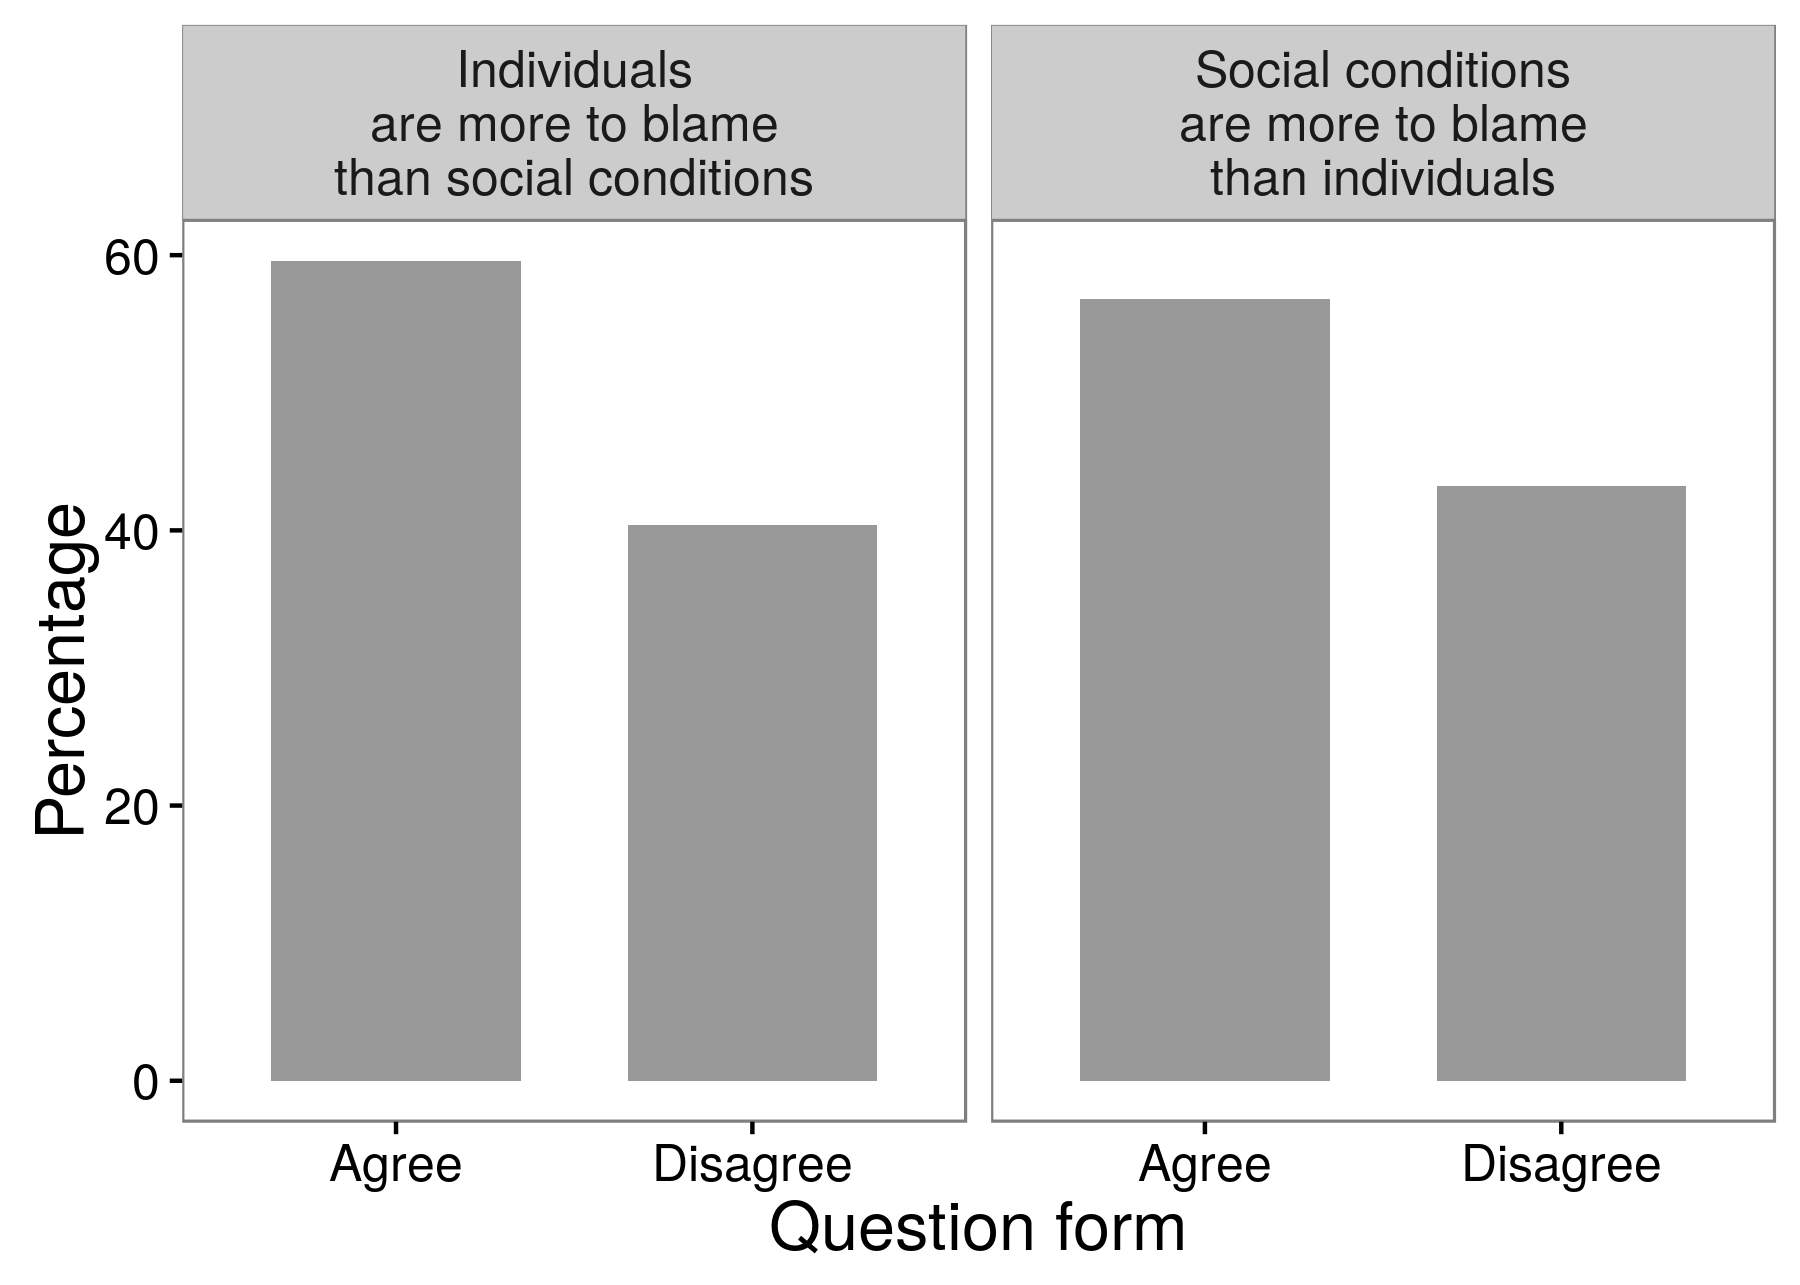 चित्रा 3.3: एक सर्वेक्षण प्रयोग के नतीजे बताते हैं कि शोधकर्ताओं ने इस सवाल के आधार पर अलग-अलग उत्तरों प्राप्त कर सकते हैं कि उन्होंने सवाल कैसे पूछा। अधिकांश उत्तरदाताओं ने सहमति व्यक्त की कि अपराध और कानूनहीनता के लिए सामाजिक स्थितियों की तुलना में व्यक्तियों को दोषी ठहराया जा सकता है। और अधिकांश उत्तरदाताओं ने विपरीत के साथ सहमति व्यक्त की: सामाजिक स्थितियां व्यक्तियों की तुलना में ज़िम्मेदार हैं। श्यूमन और प्रेसर (1 99 6), तालिका 8.1 से अनुकूलित।